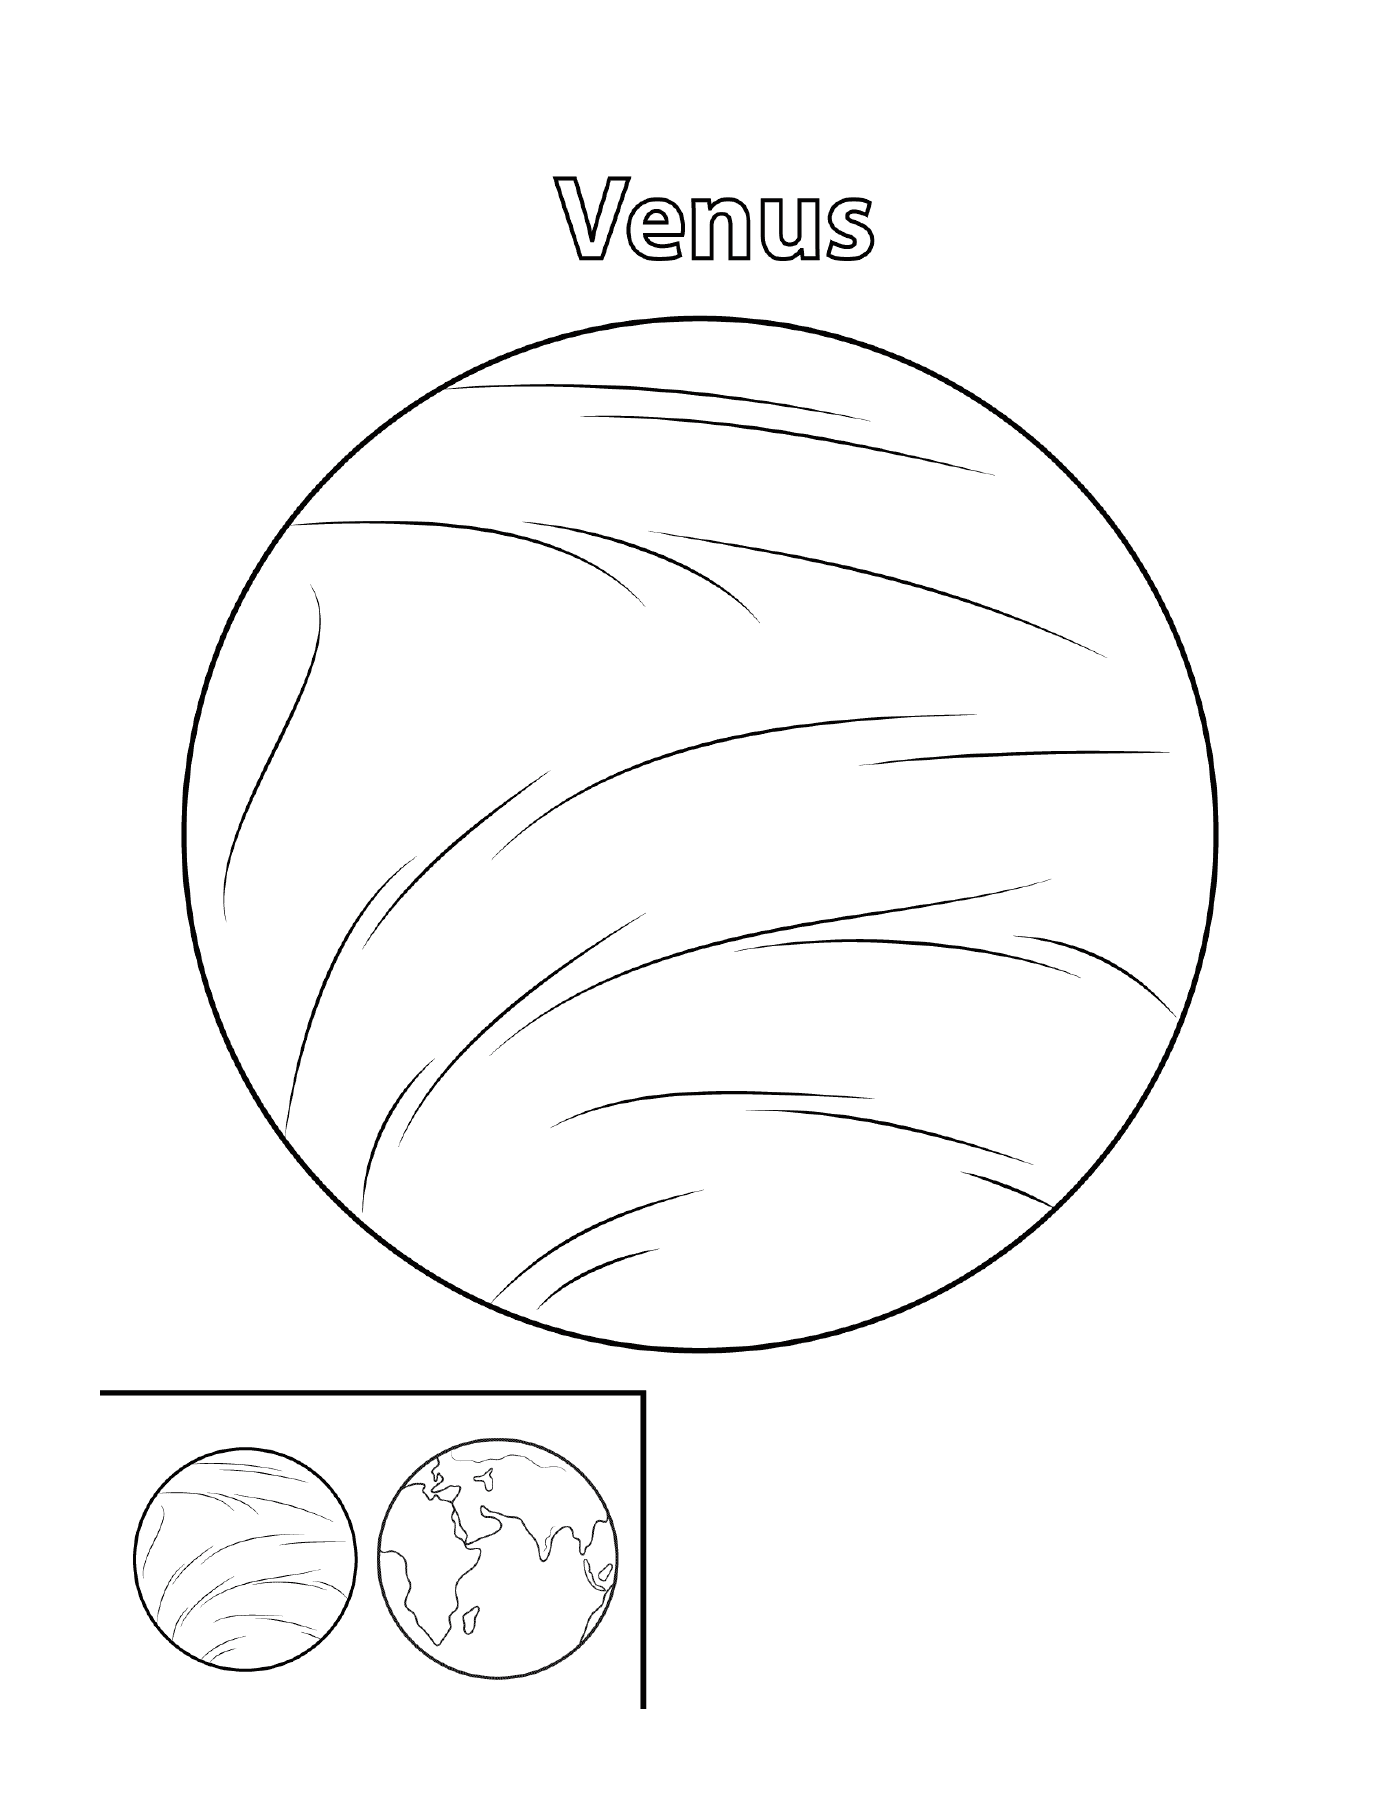  Planeta Venus en el espacio 